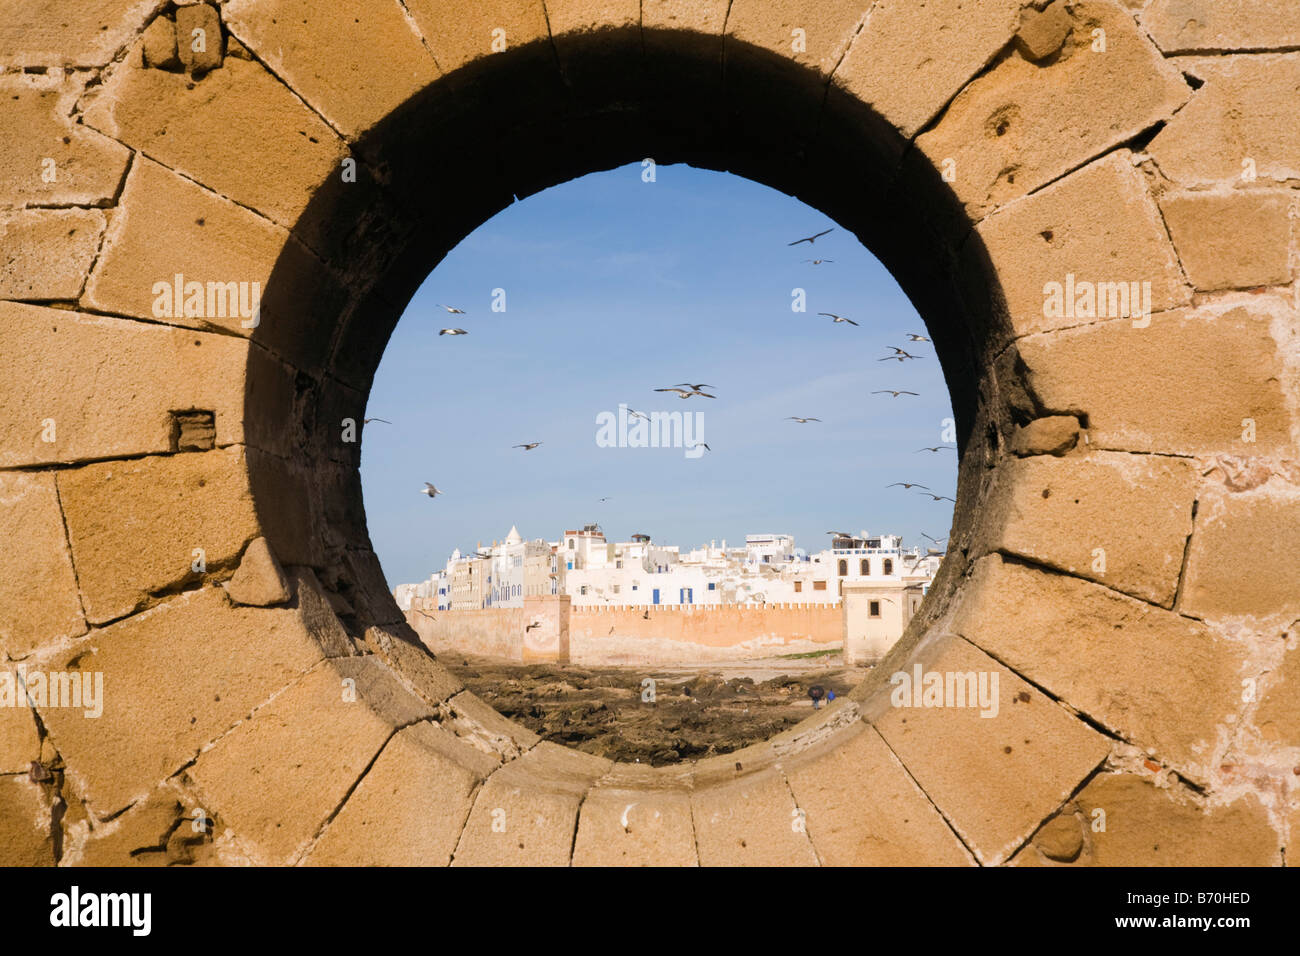 Essaouira Maroc Afrique du Nord Vue d'immeubles blancs à Medina ville du 18ème siècle à travers le trou dans le mur des remparts circulaires Banque D'Images